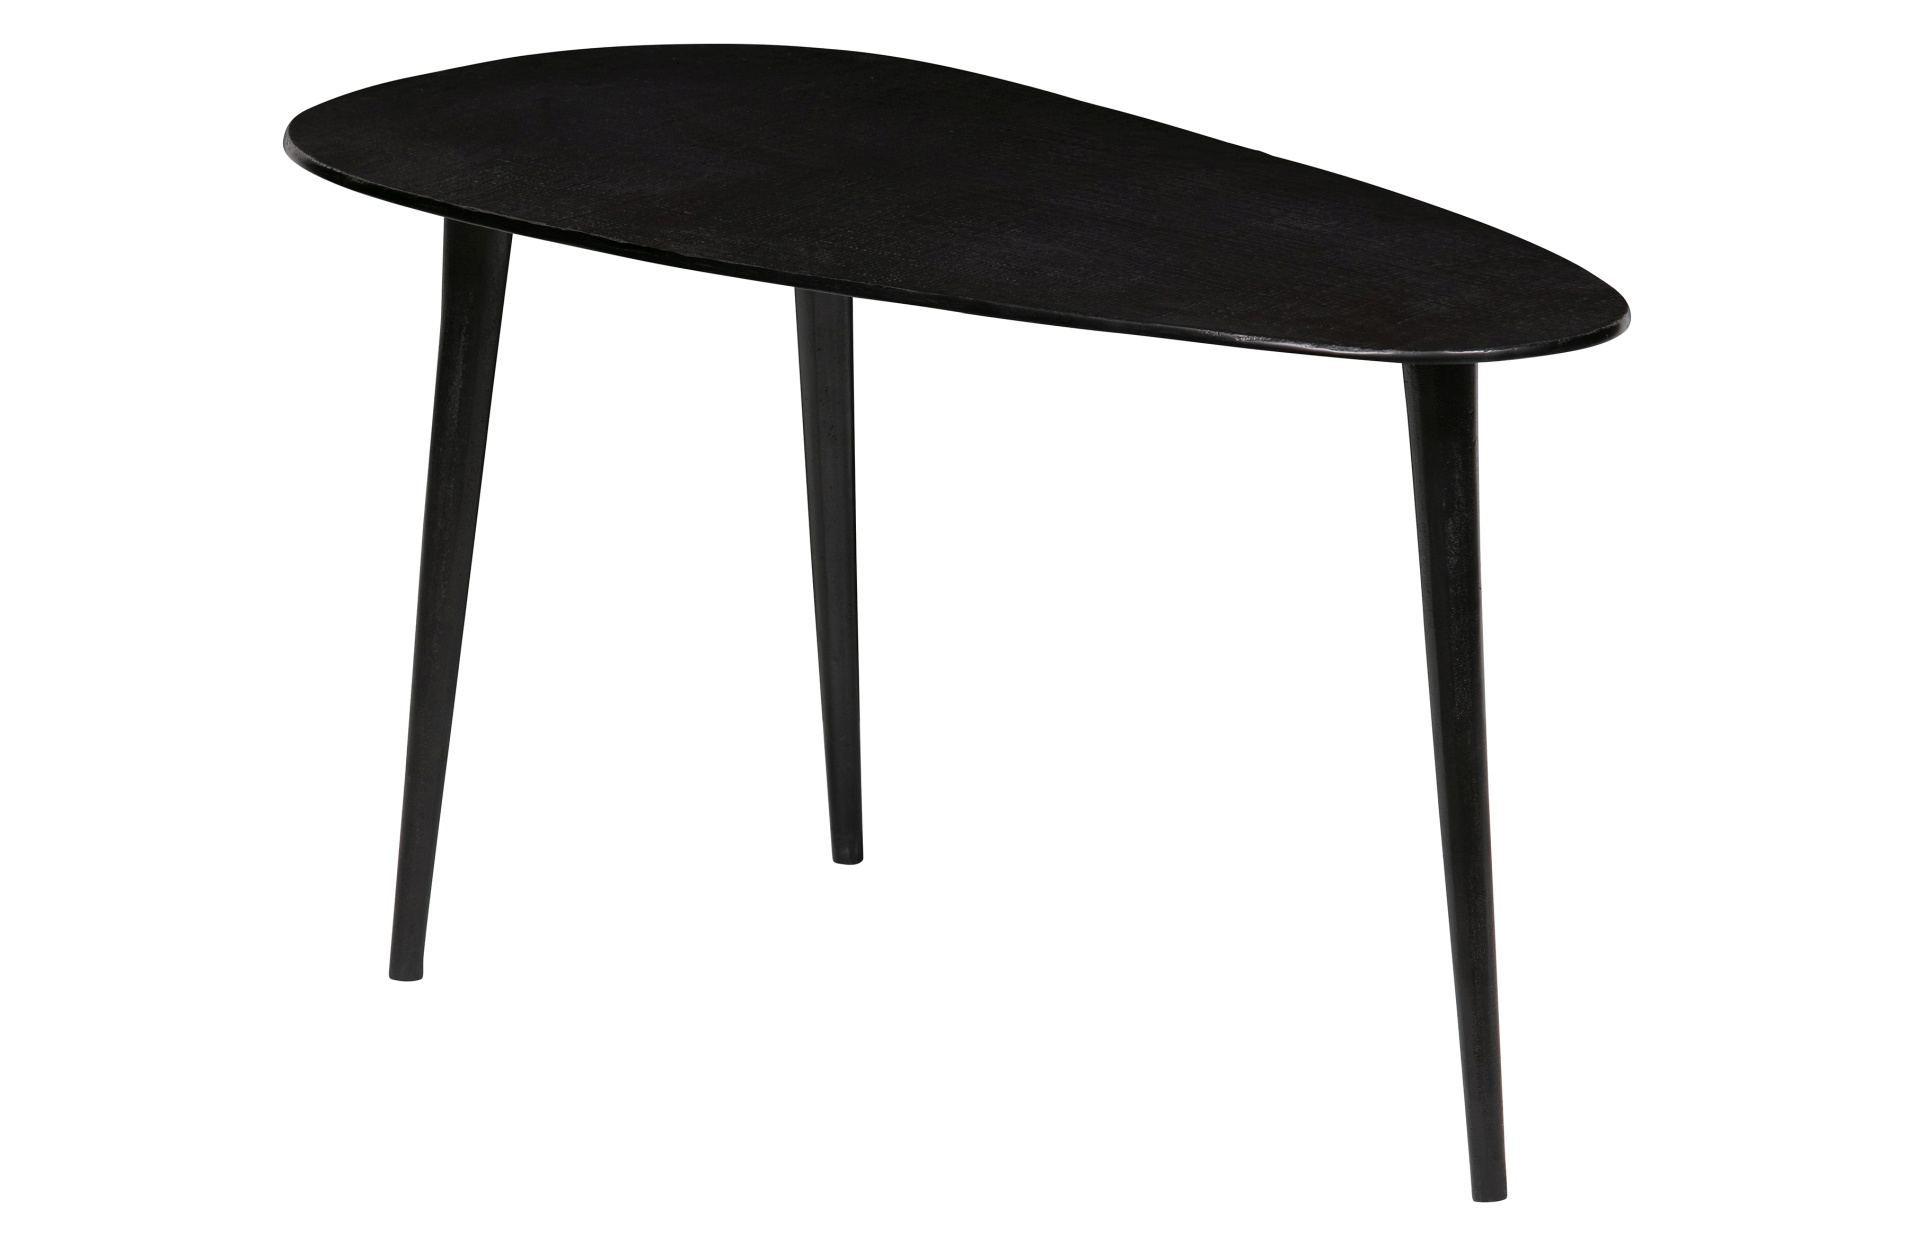 Das Beistelltisch 2er-Set Triangle wurde aus Aluminium gefertigt. Der Tisch überzeugt mit seiner dreieckigen Form. Der Tisch hat einen schwarzen Farbton.